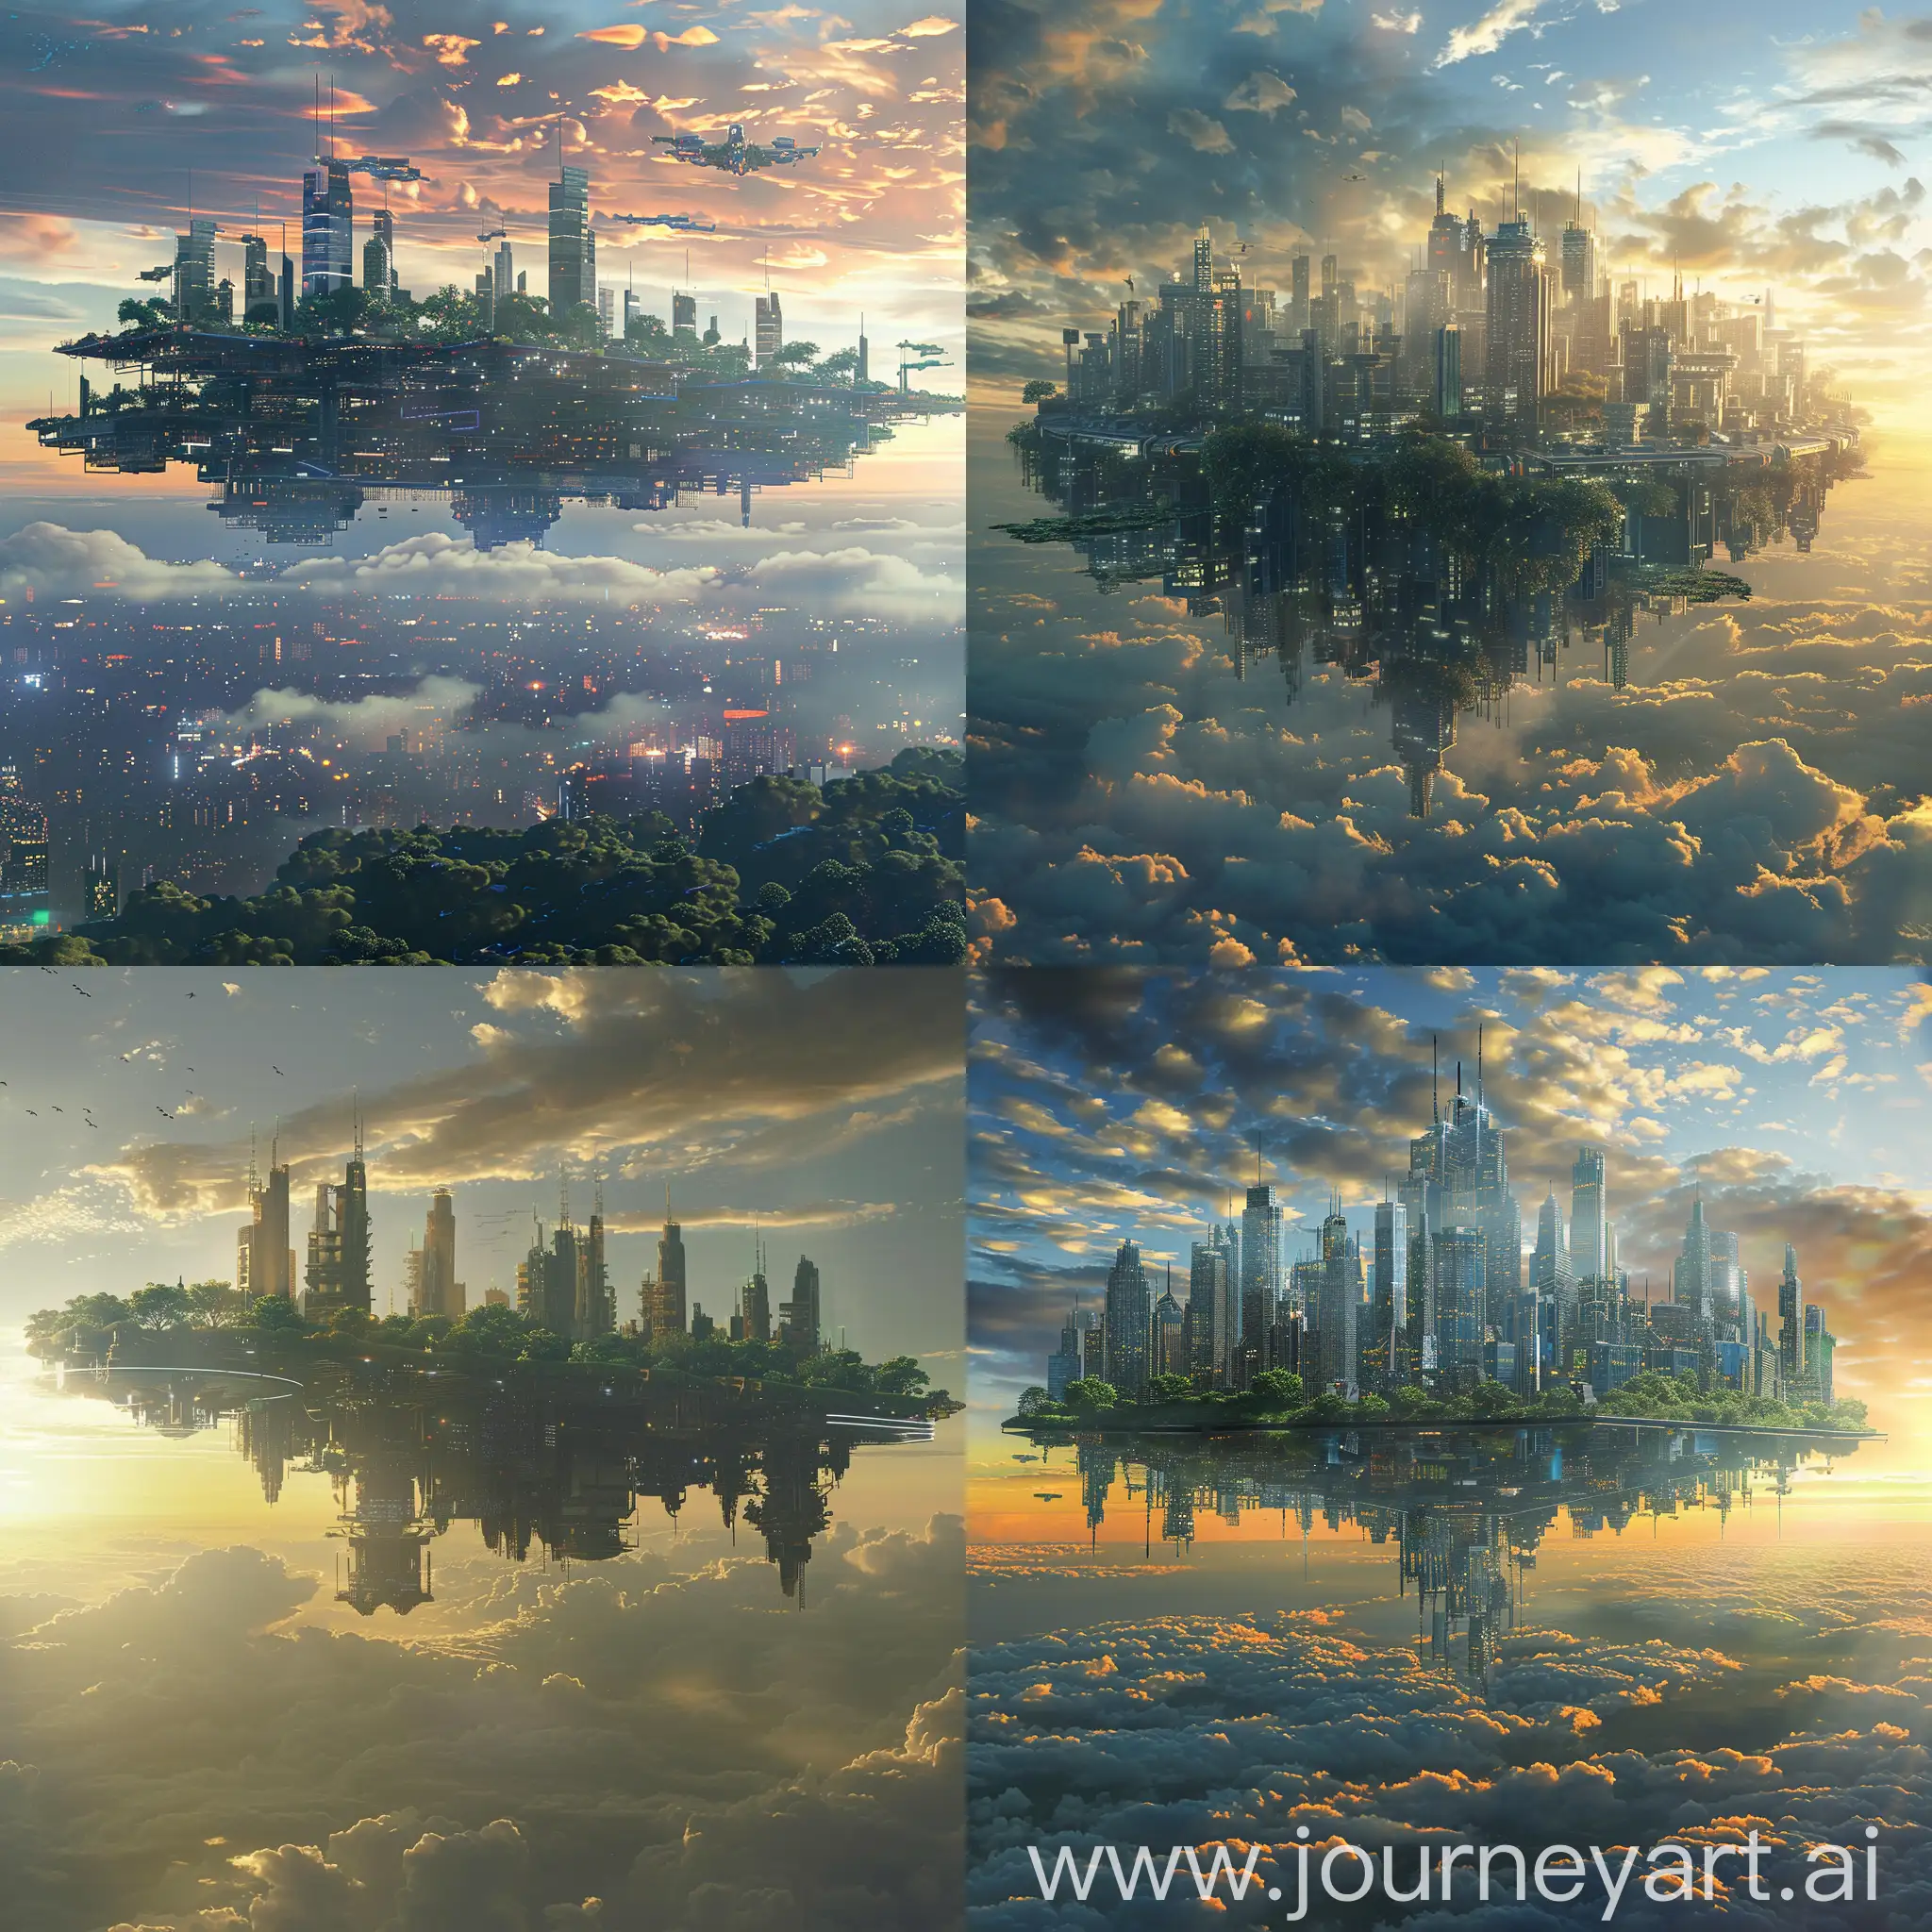 Ciudad  gigante y extensa, volando en el cielo,  futurista con rascacielos , con vegetacion. plataforma voladora en el cielo. Amaneciendo por la mañana